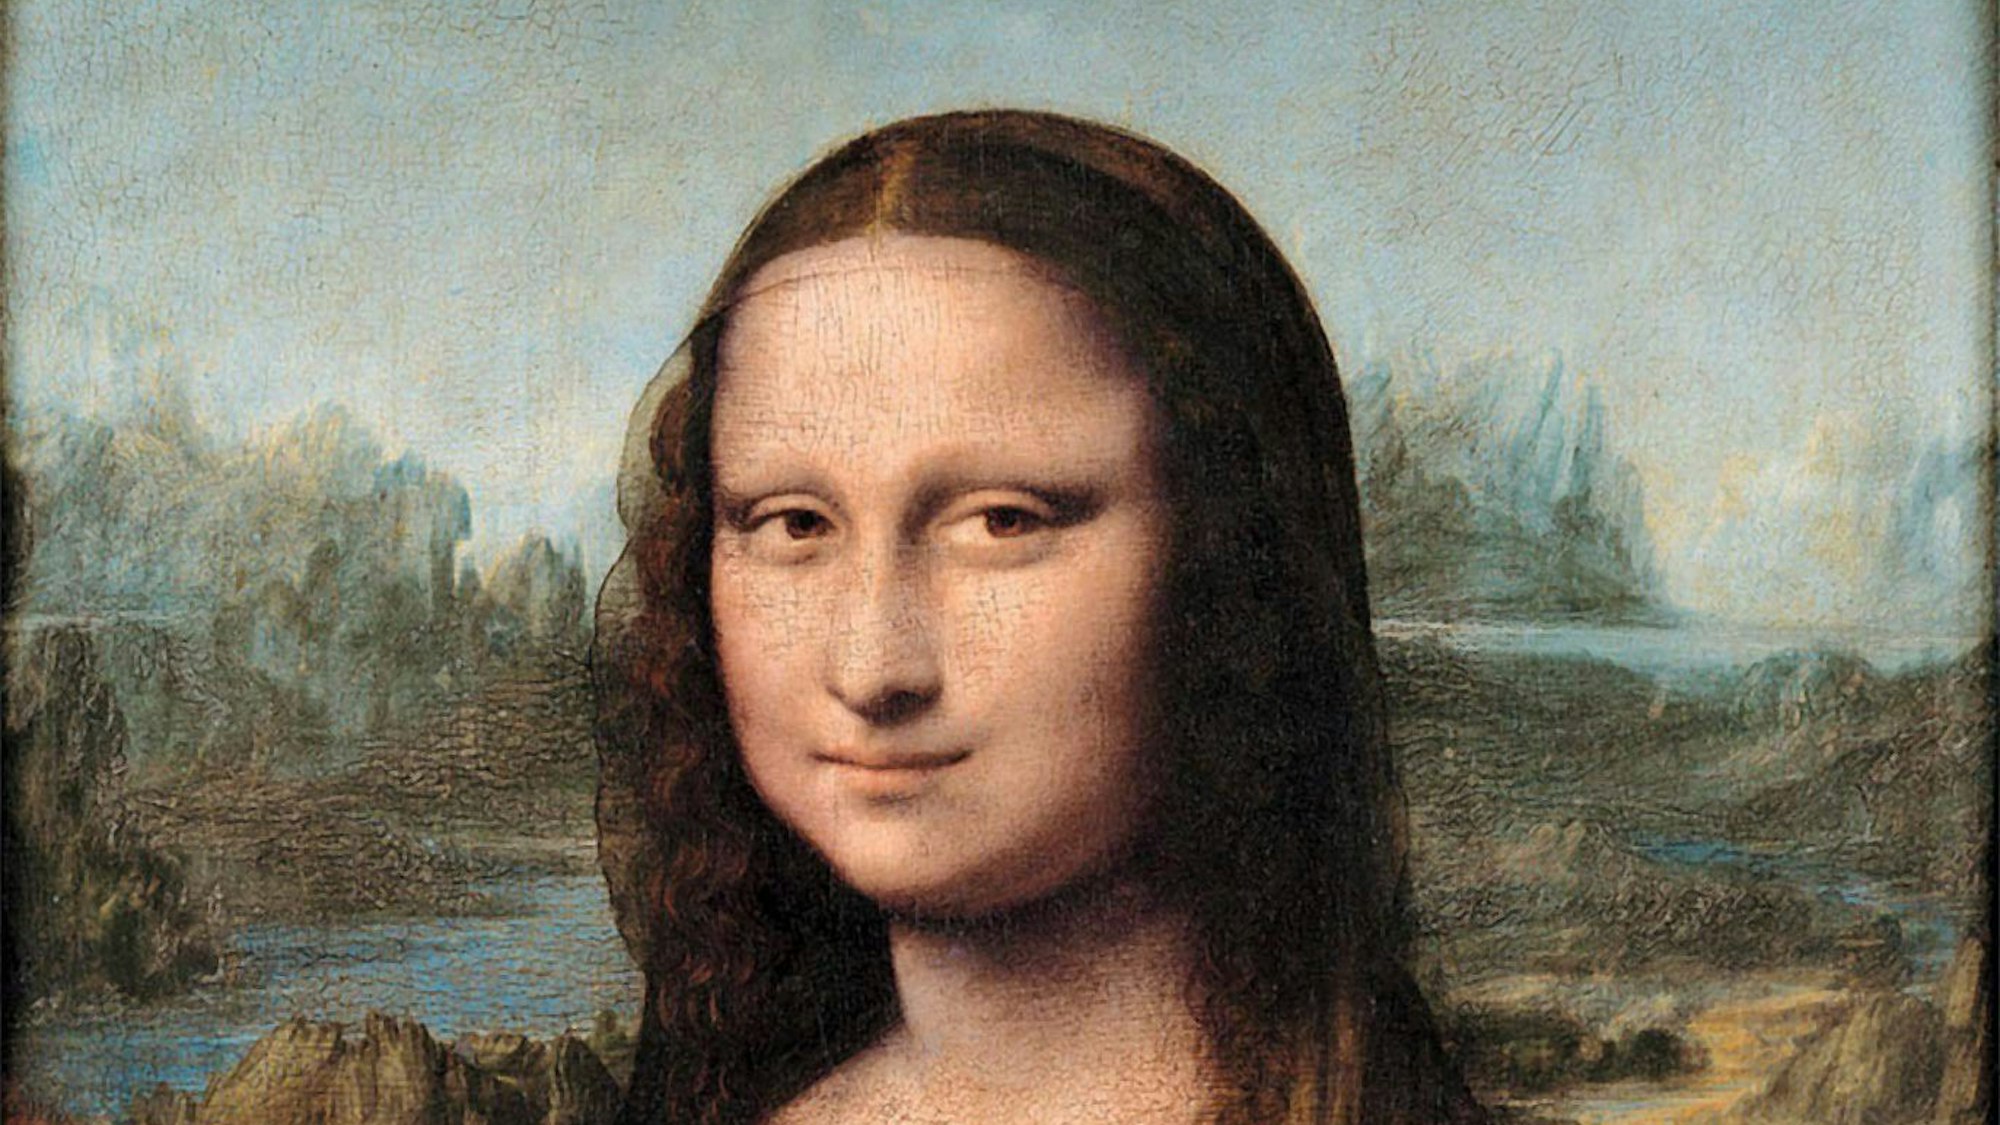 Die Mona Lisa von Leonardo da Vinci ist das berühmteste Bild im Louvre. Nun gibt es neue Forschungsergebnisse.